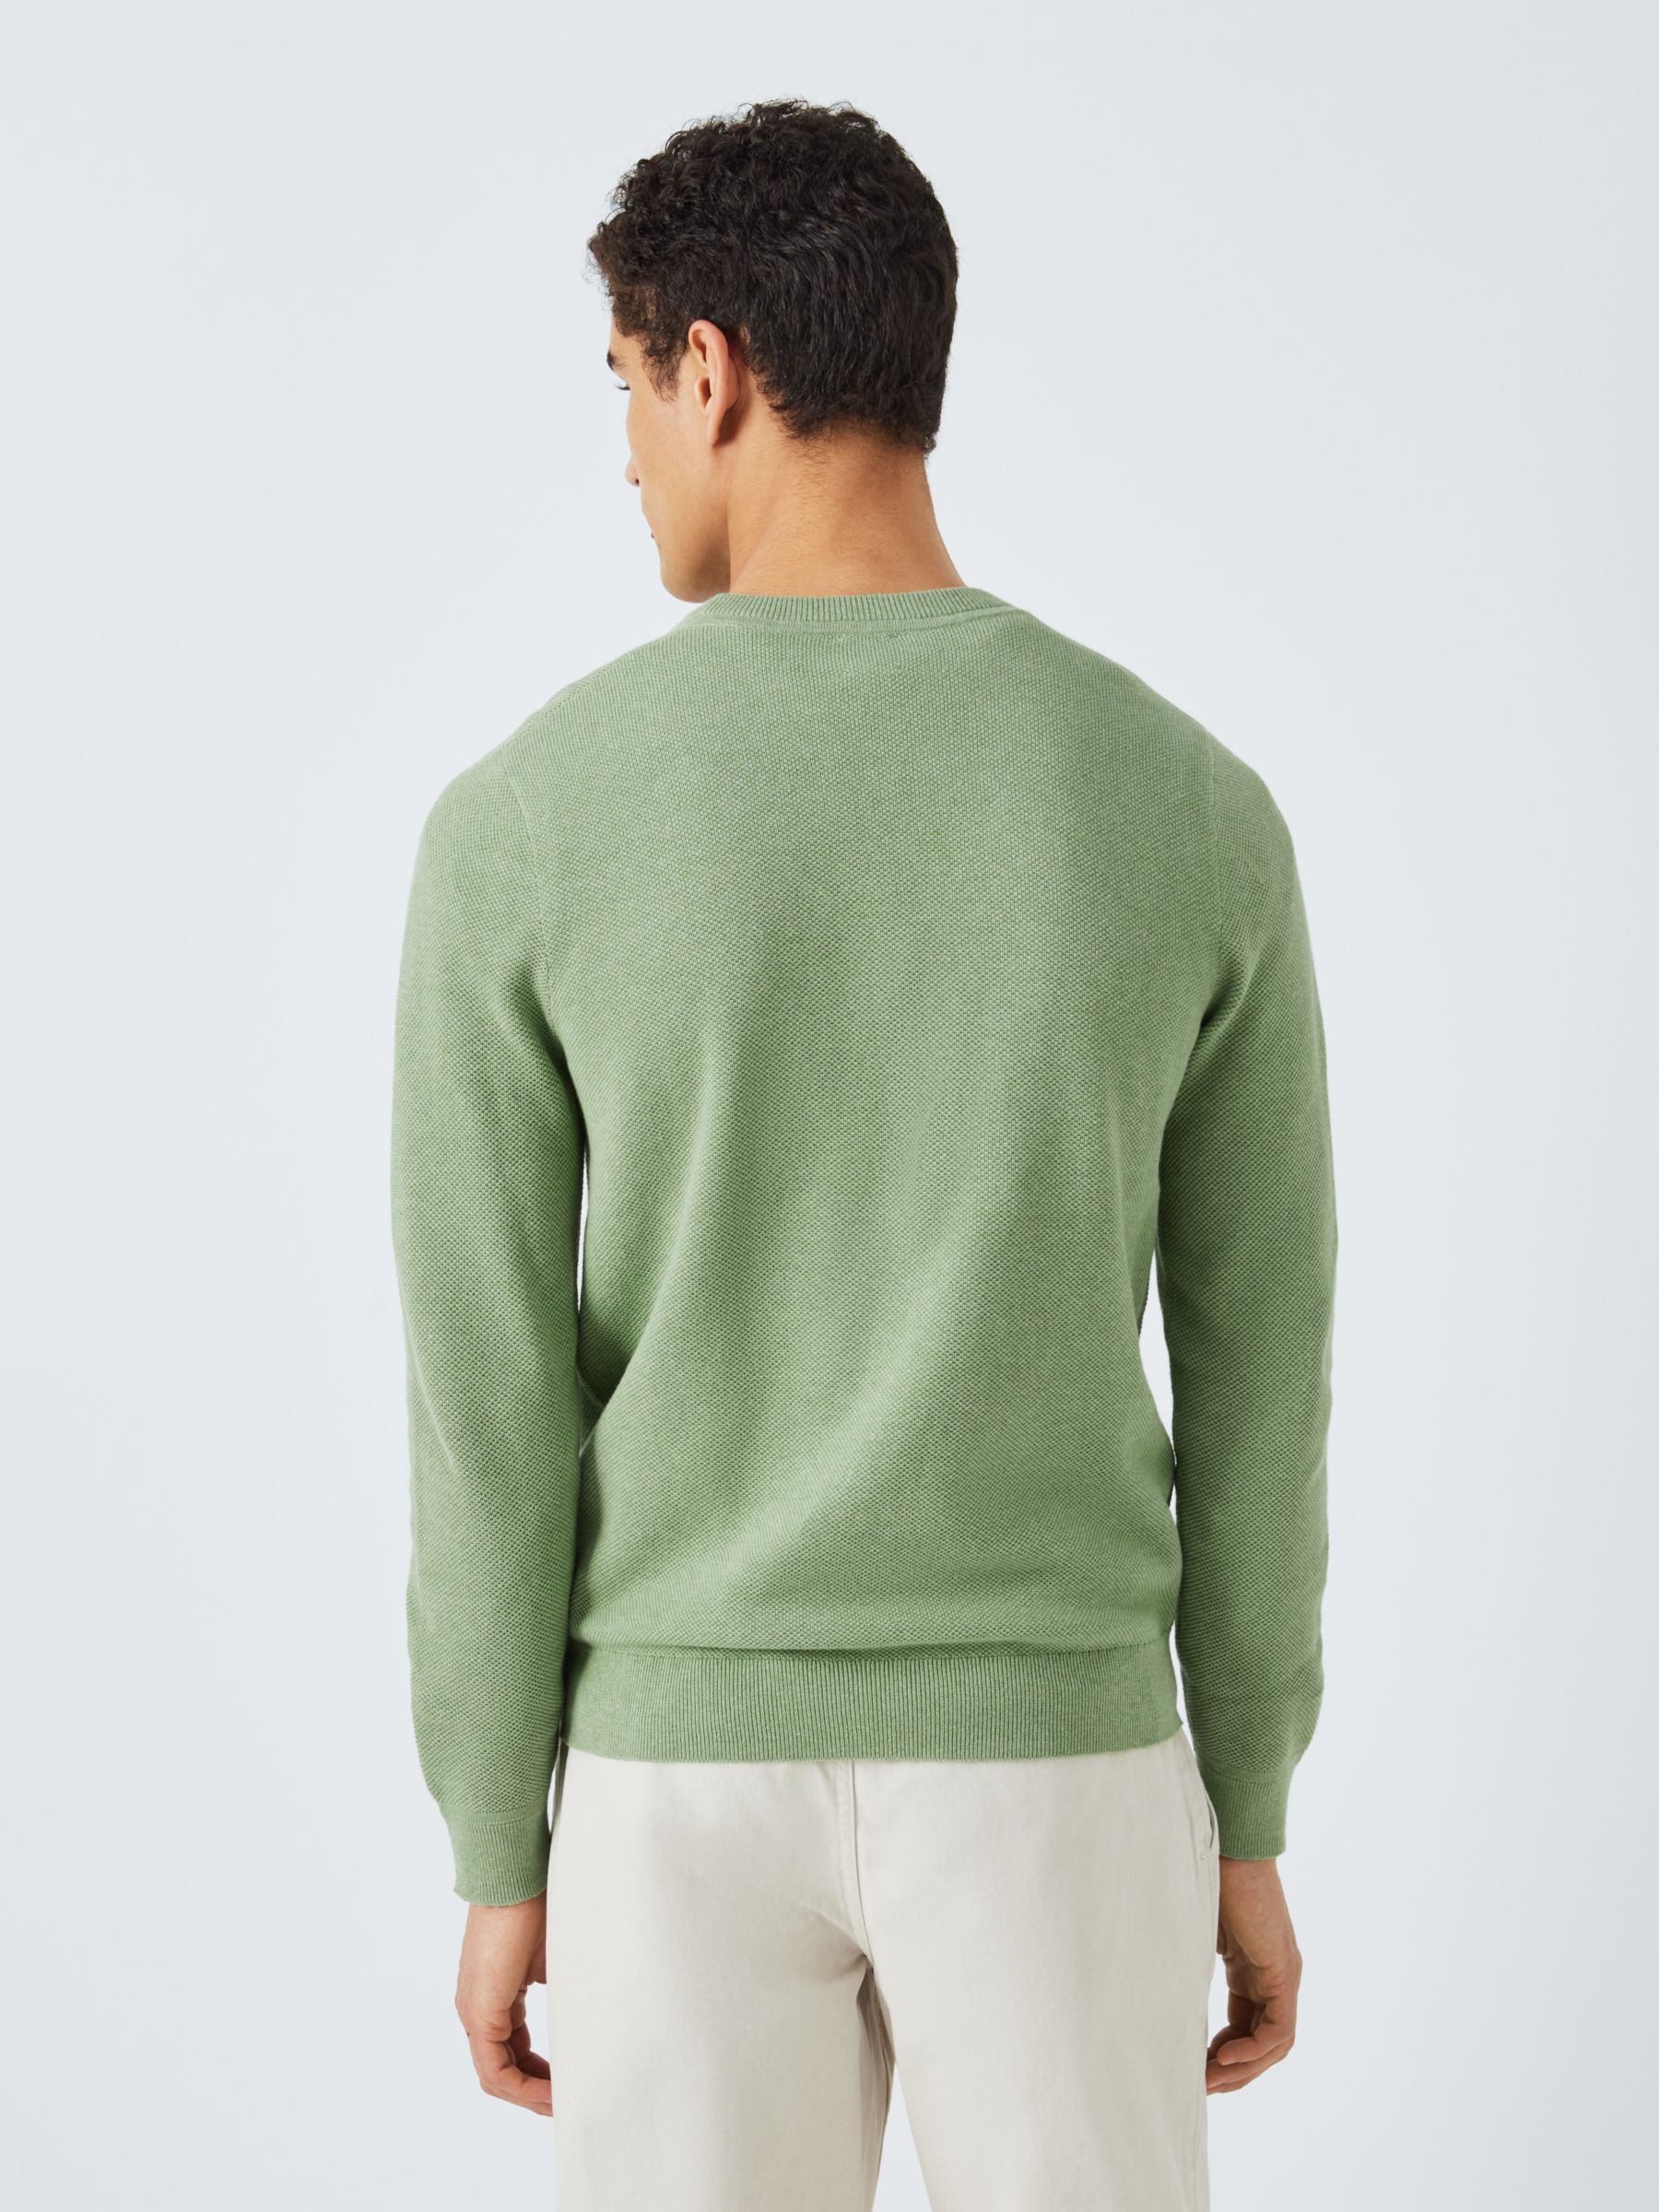 John Lewis Cotton Knitted Jumper, Green Light, M